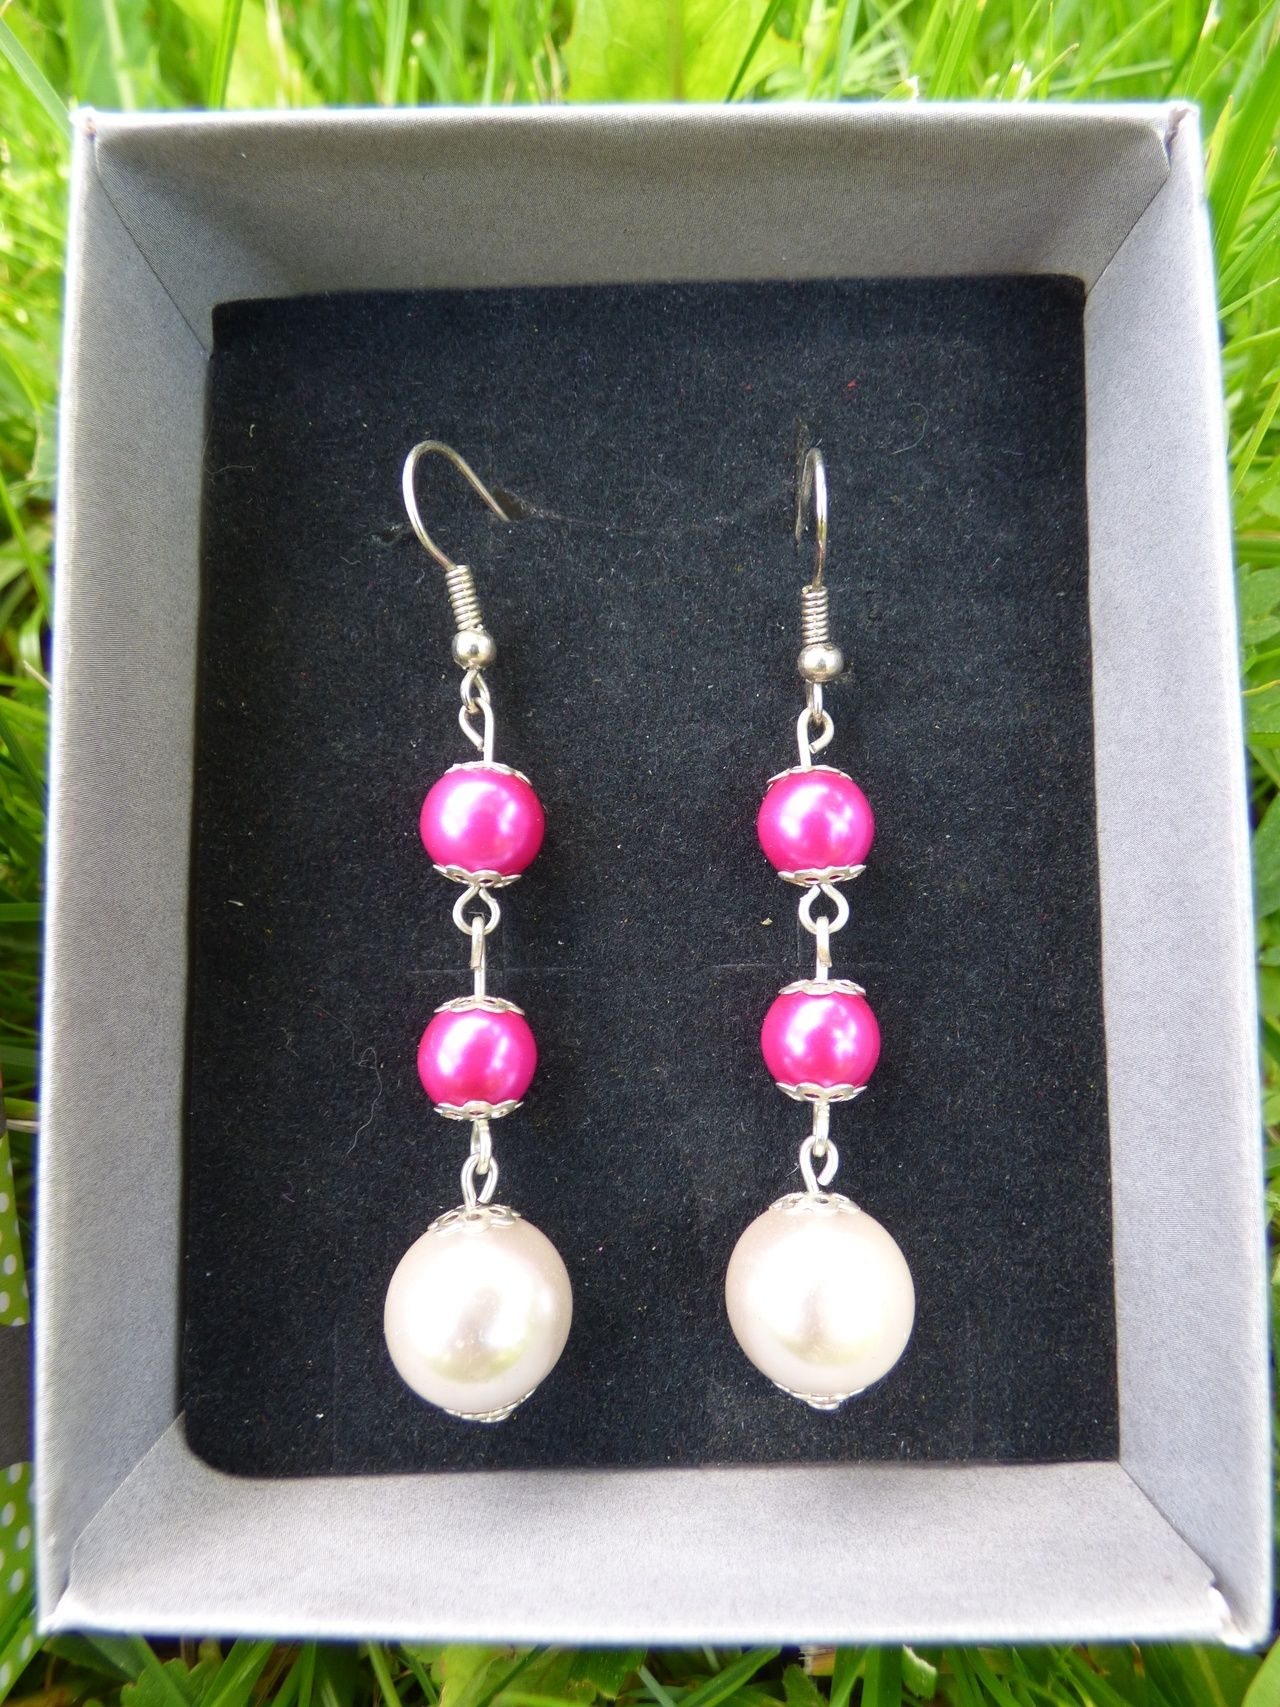 Zestaw biżuterii: kolczyki, zawieszka i bransoletka różowe perły.